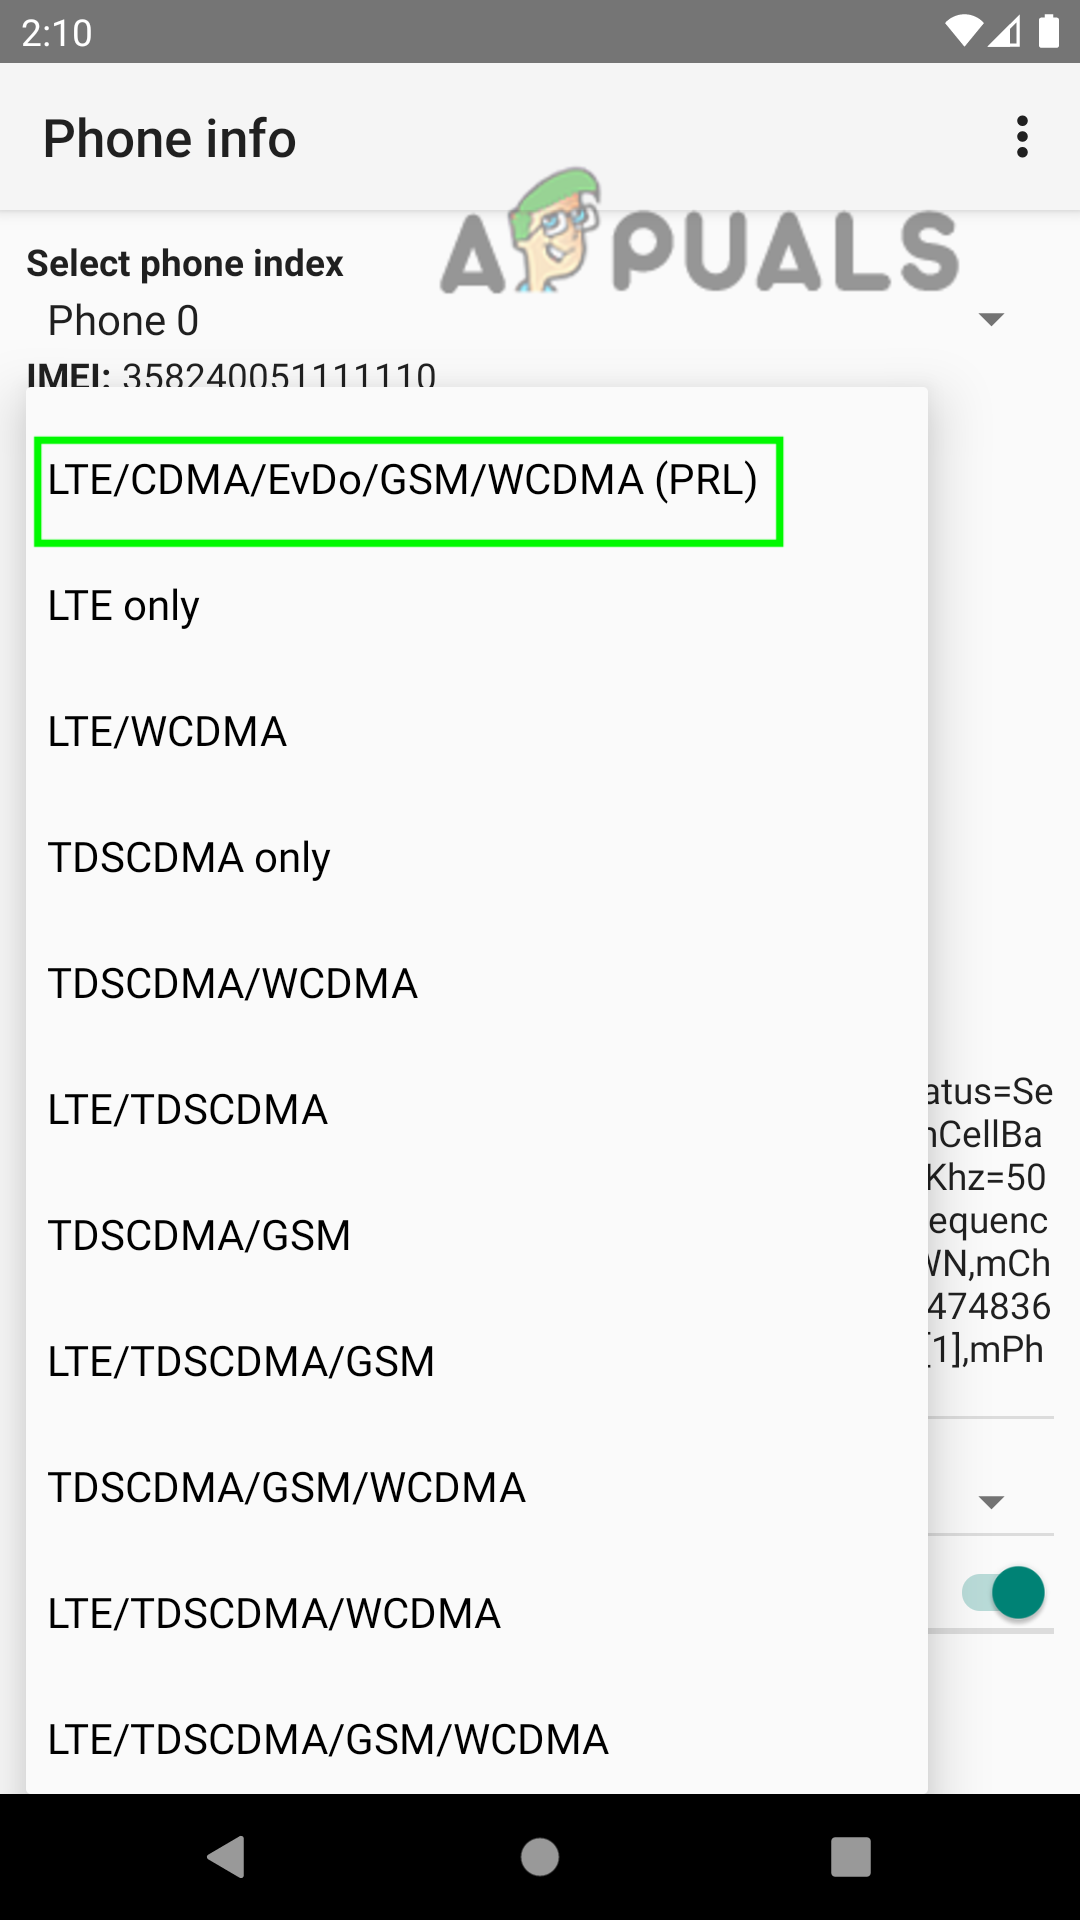 Altere o tipo de rede preferencial para LTE/CDMA/UMTS Auto (PRL)